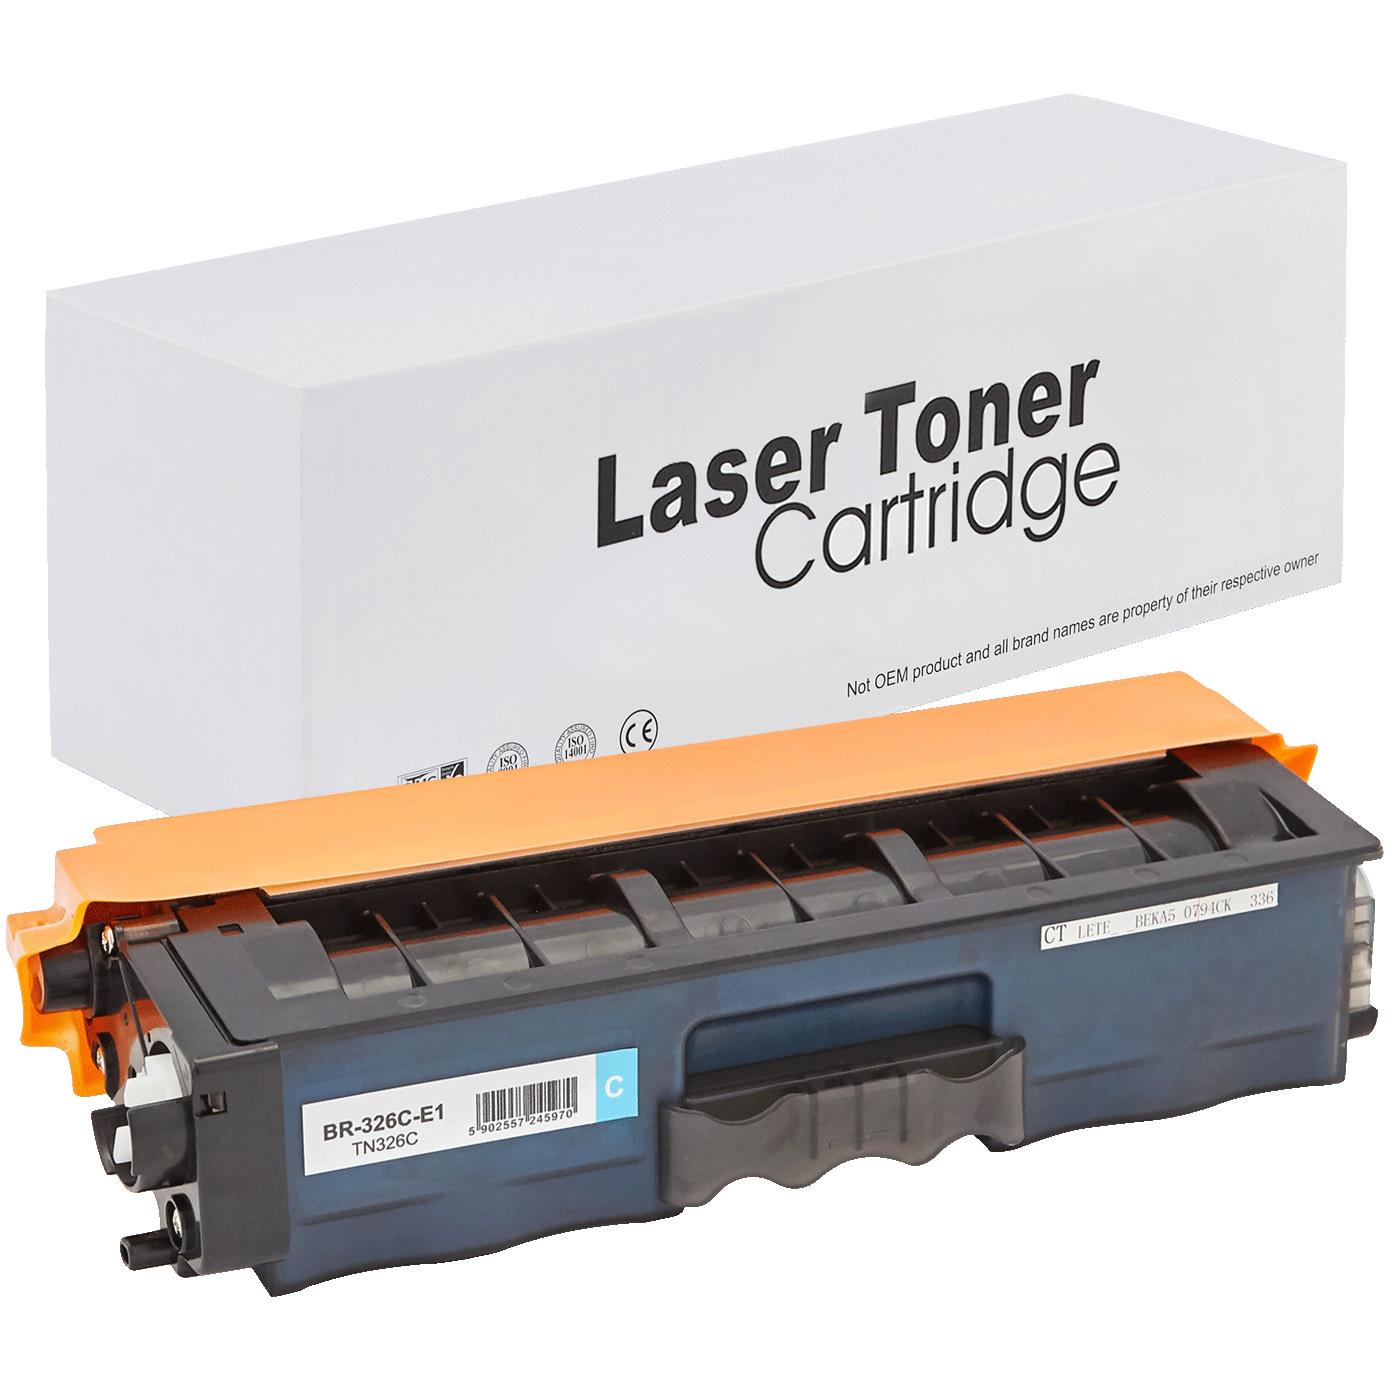 съвместима тонер касета за принтери и печатащи устройства на Brother HL-L 8250 CDN Toner BR-326C | TN326C. Ниски цени, прецизно изпълнение, високо качество.